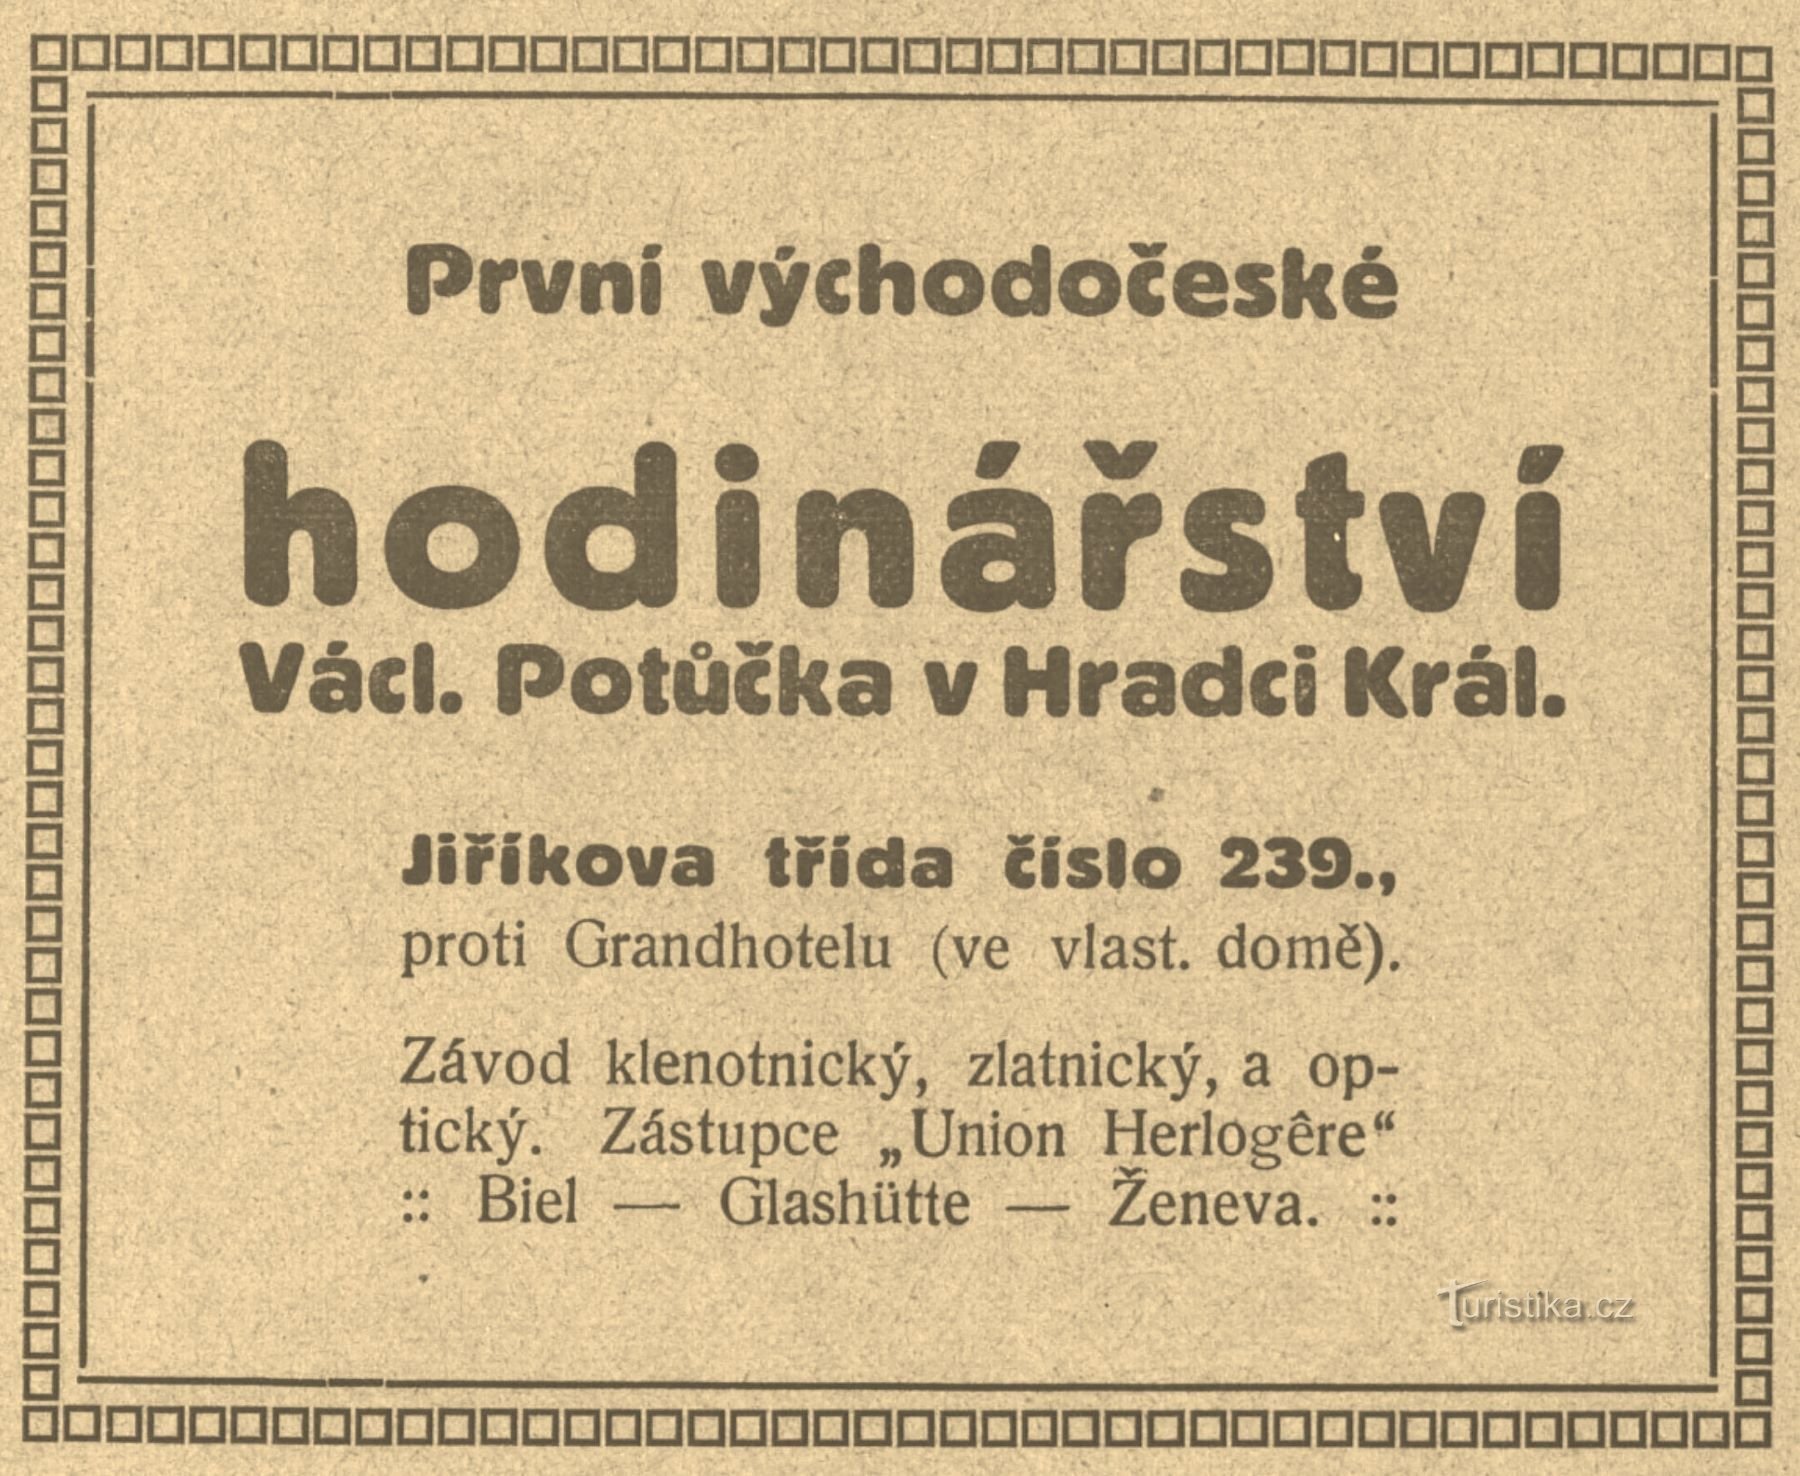 1911 年 Potůček 制表公司的时期广告